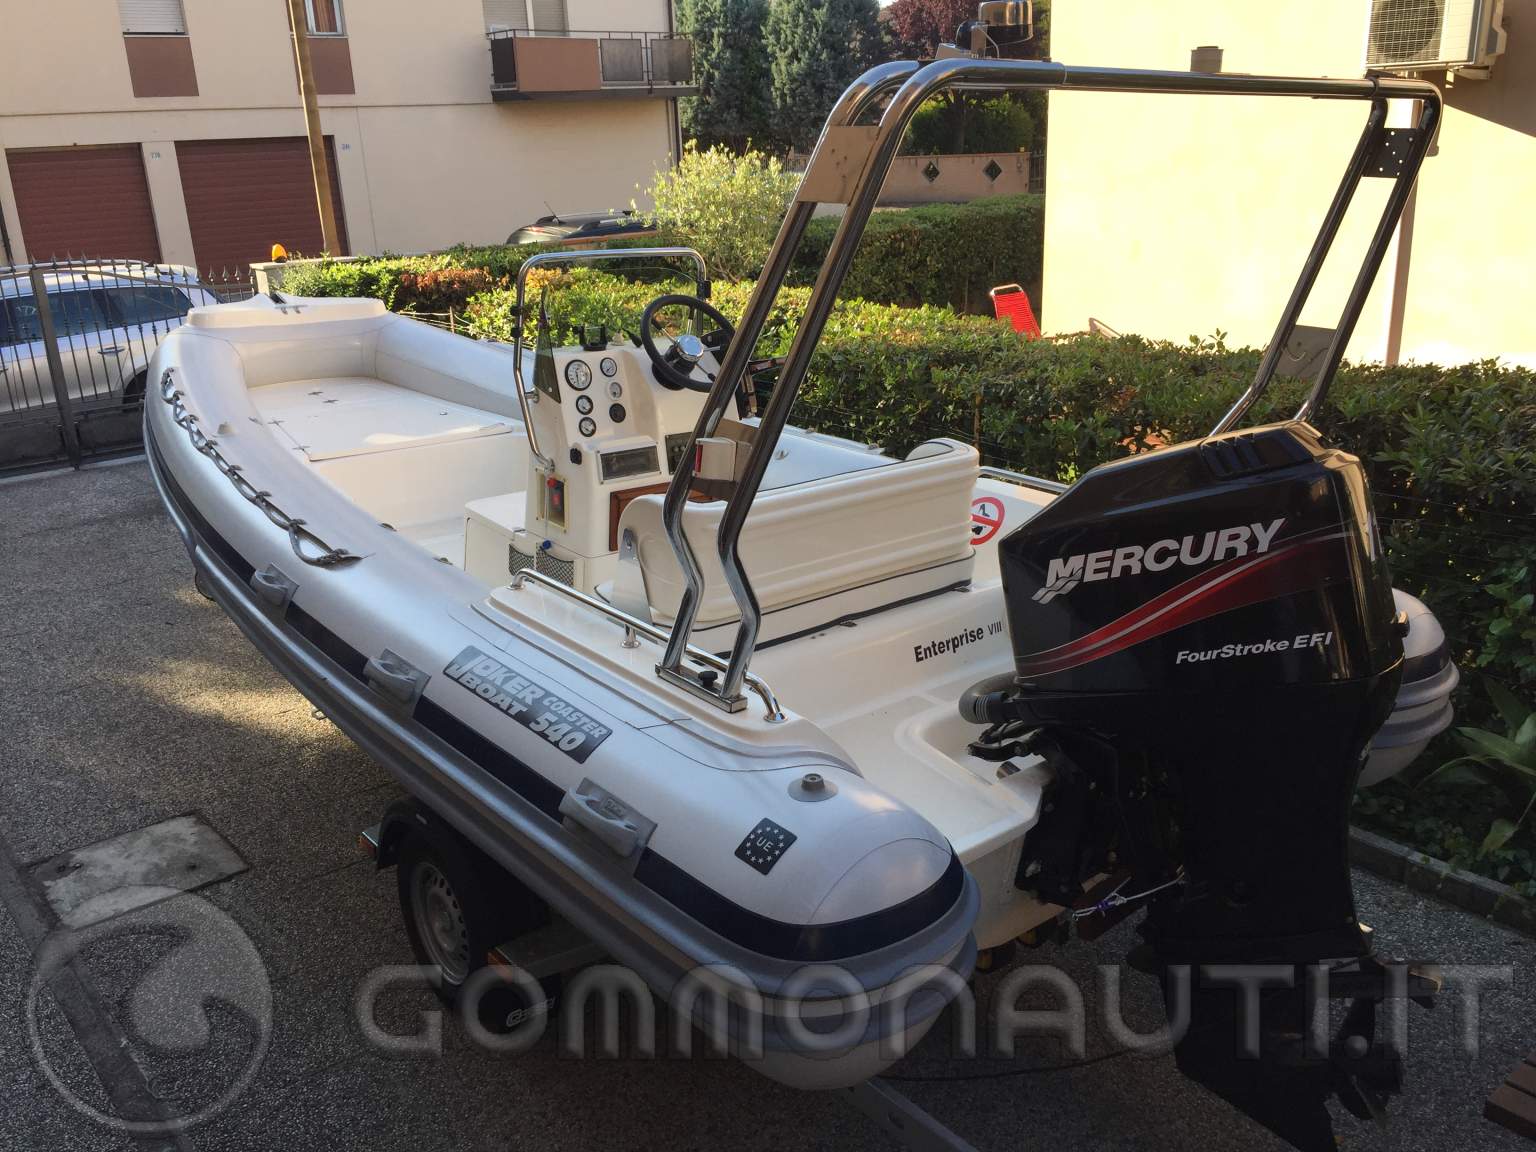 Gommone Joker Boat Coaster 540 Mercury Efi 115 HP 4 tempi